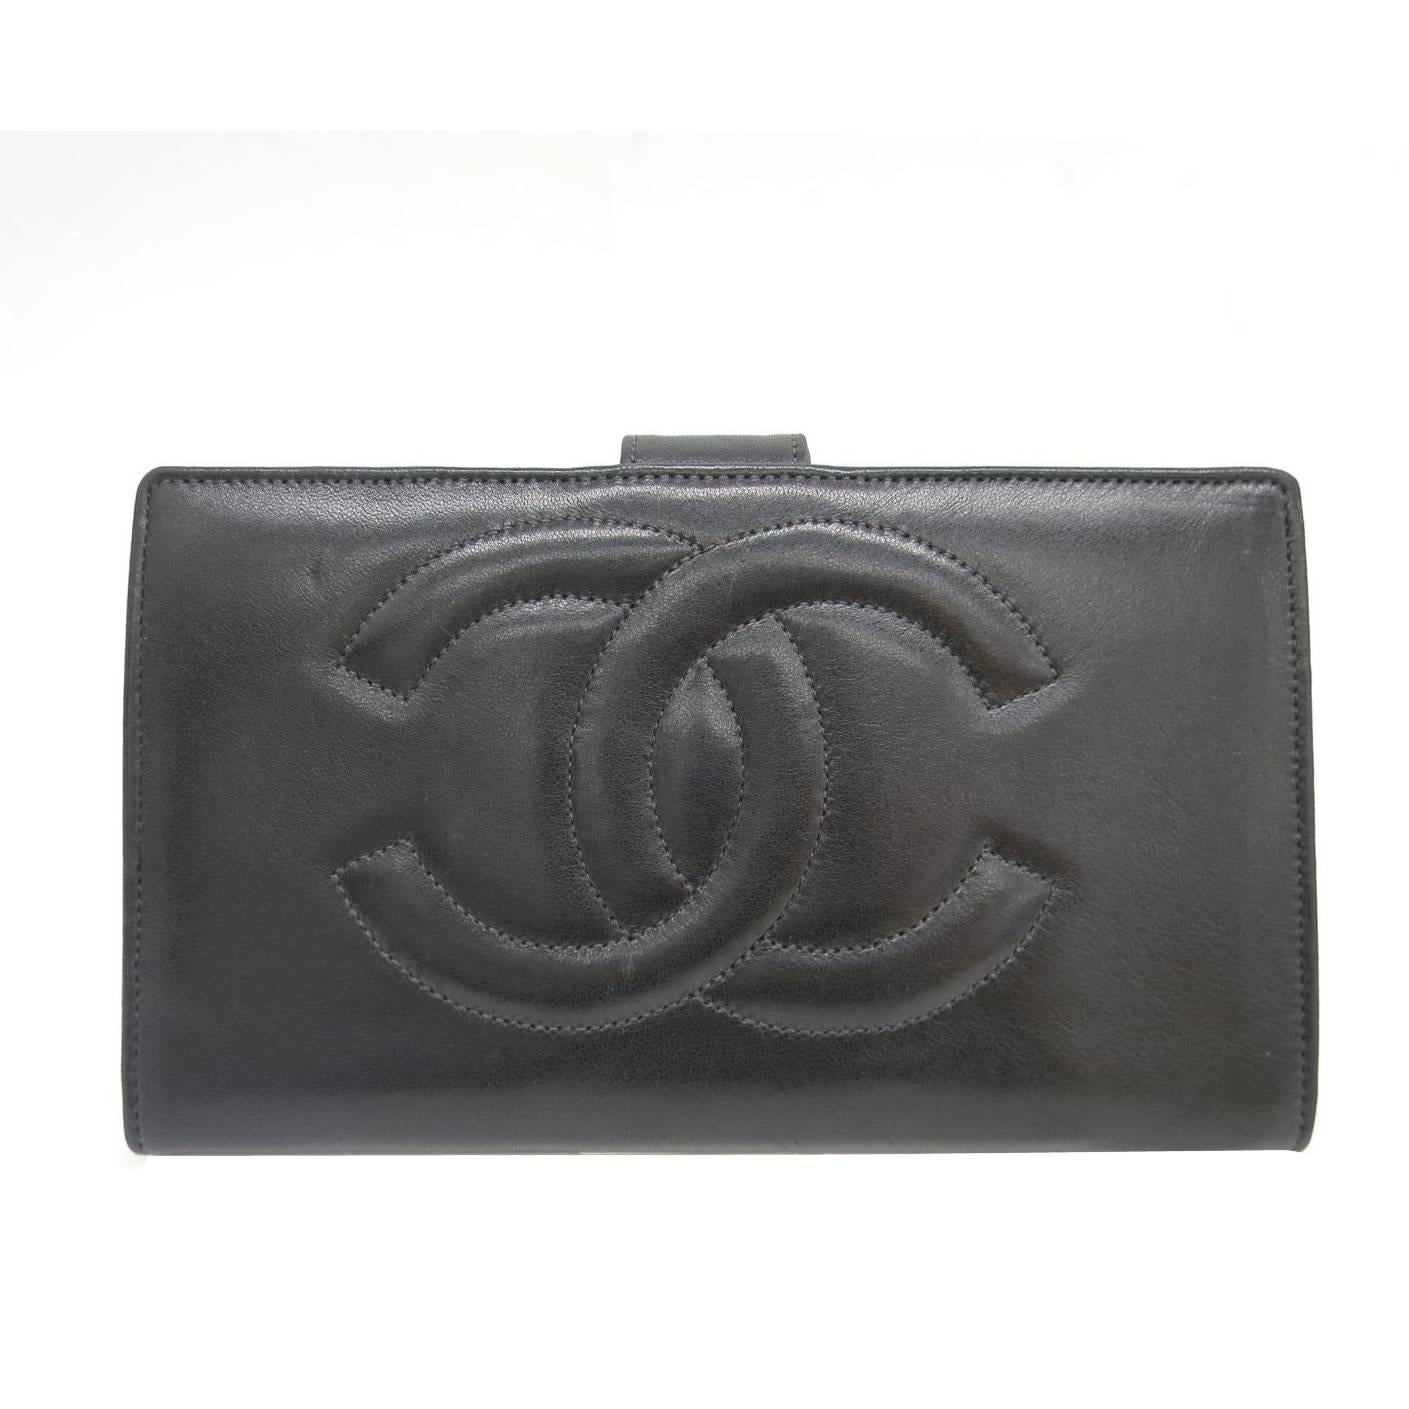 Chanel Black Lambskin Leather Bifold Wallet